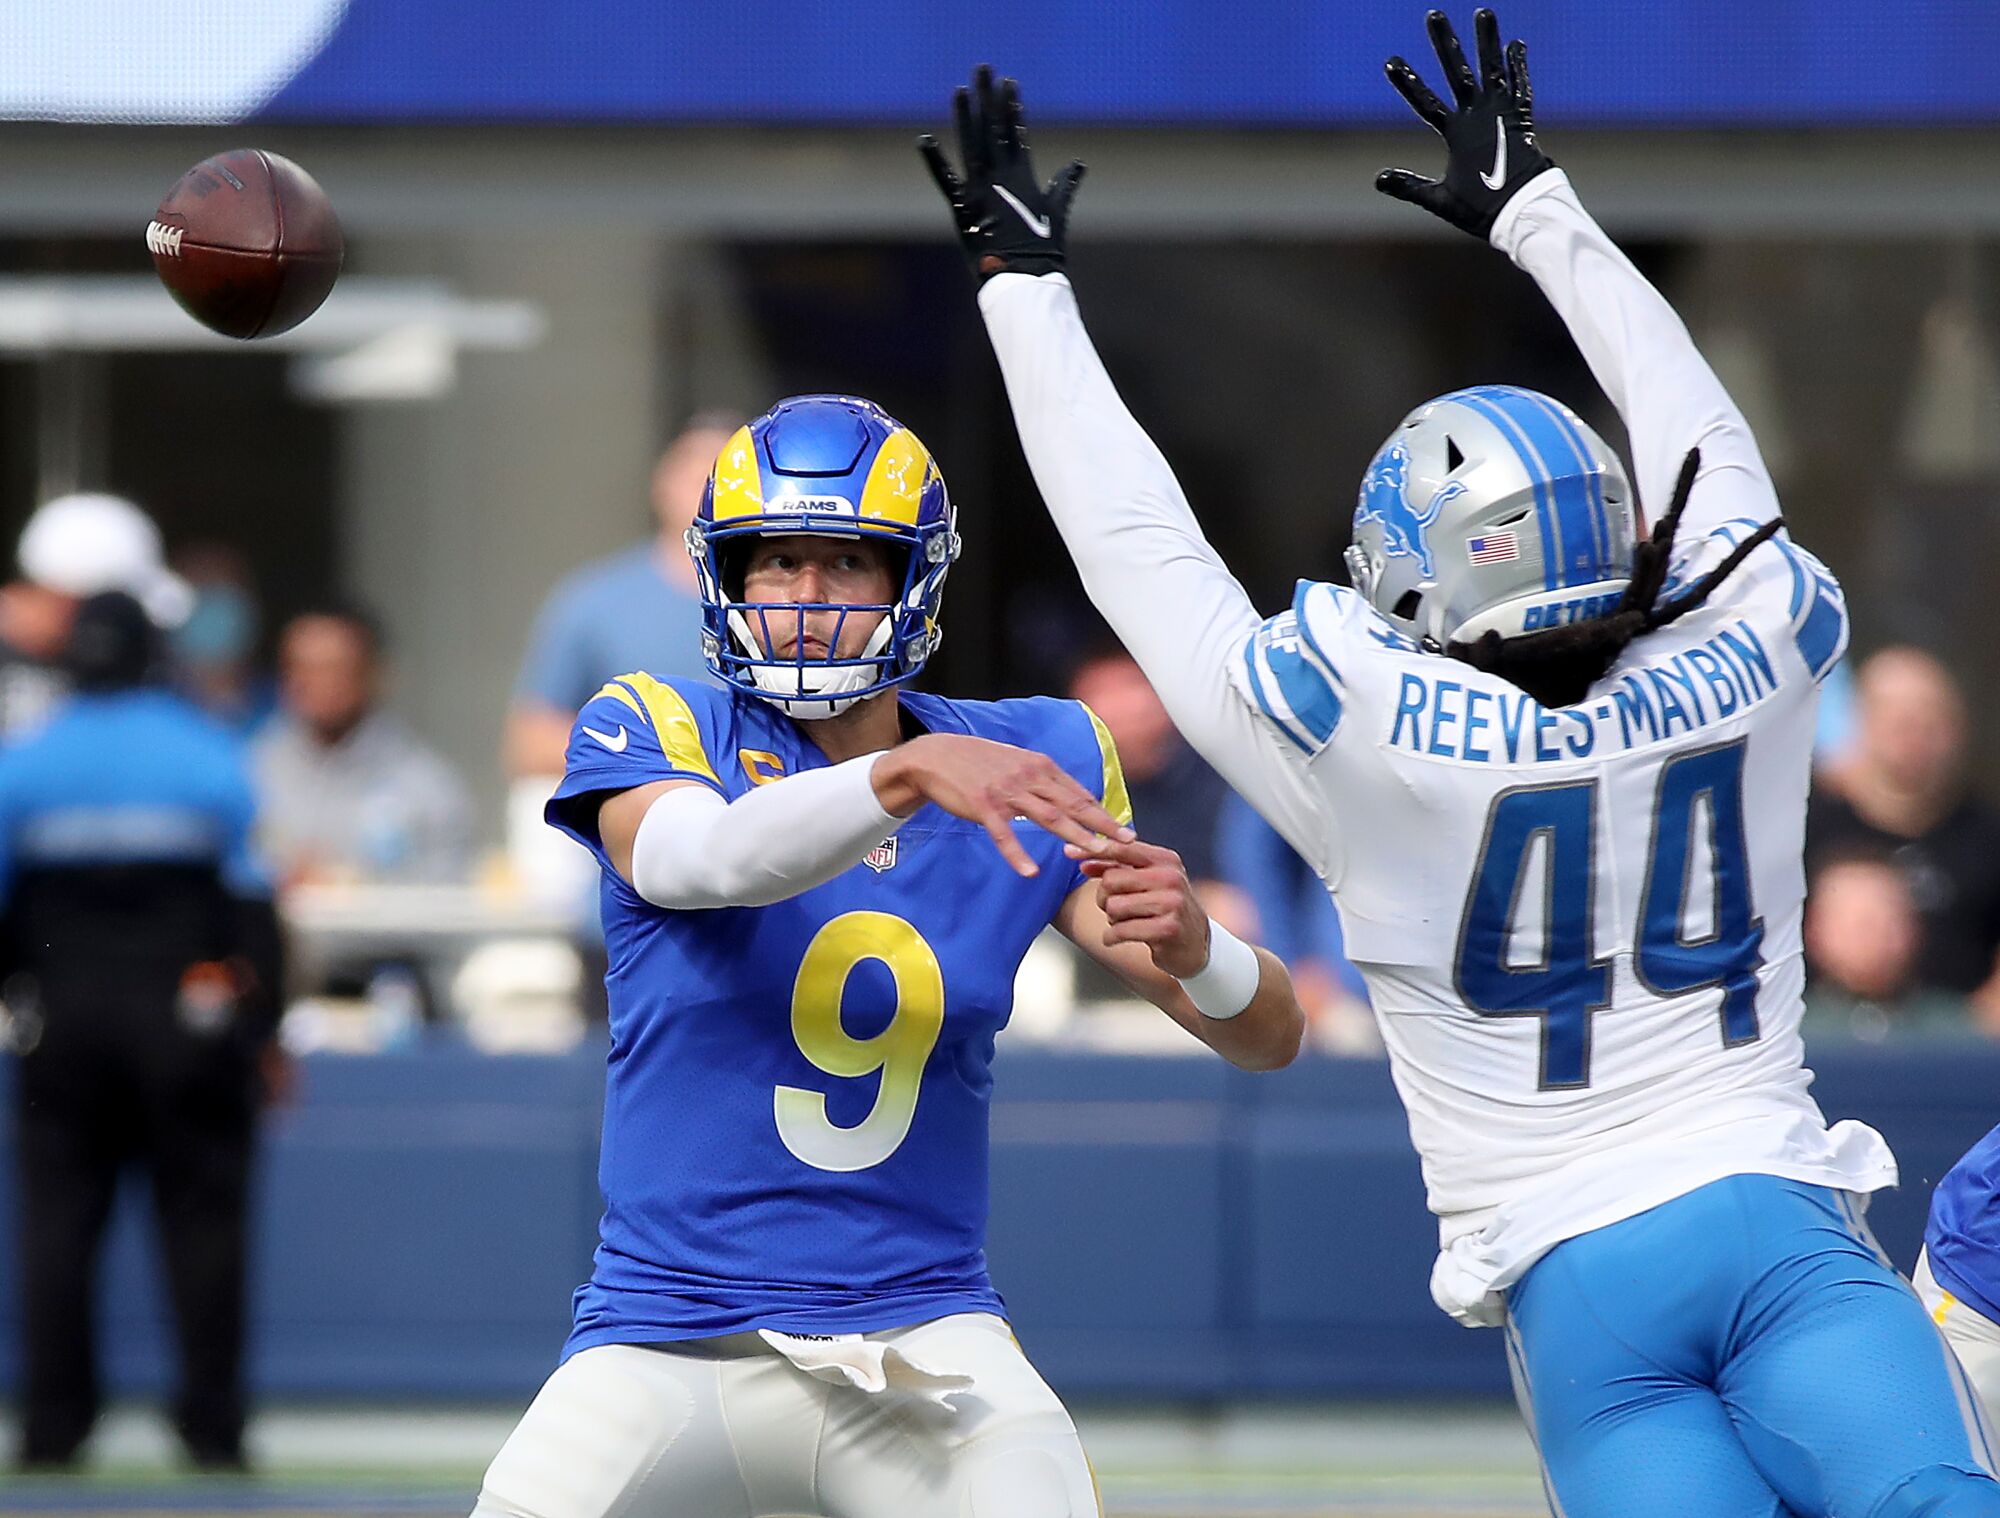 Rams quarterback Matt Stafford unloads a pass while under pressure from Lions linebacker Jaylen Reeves-Maybin.